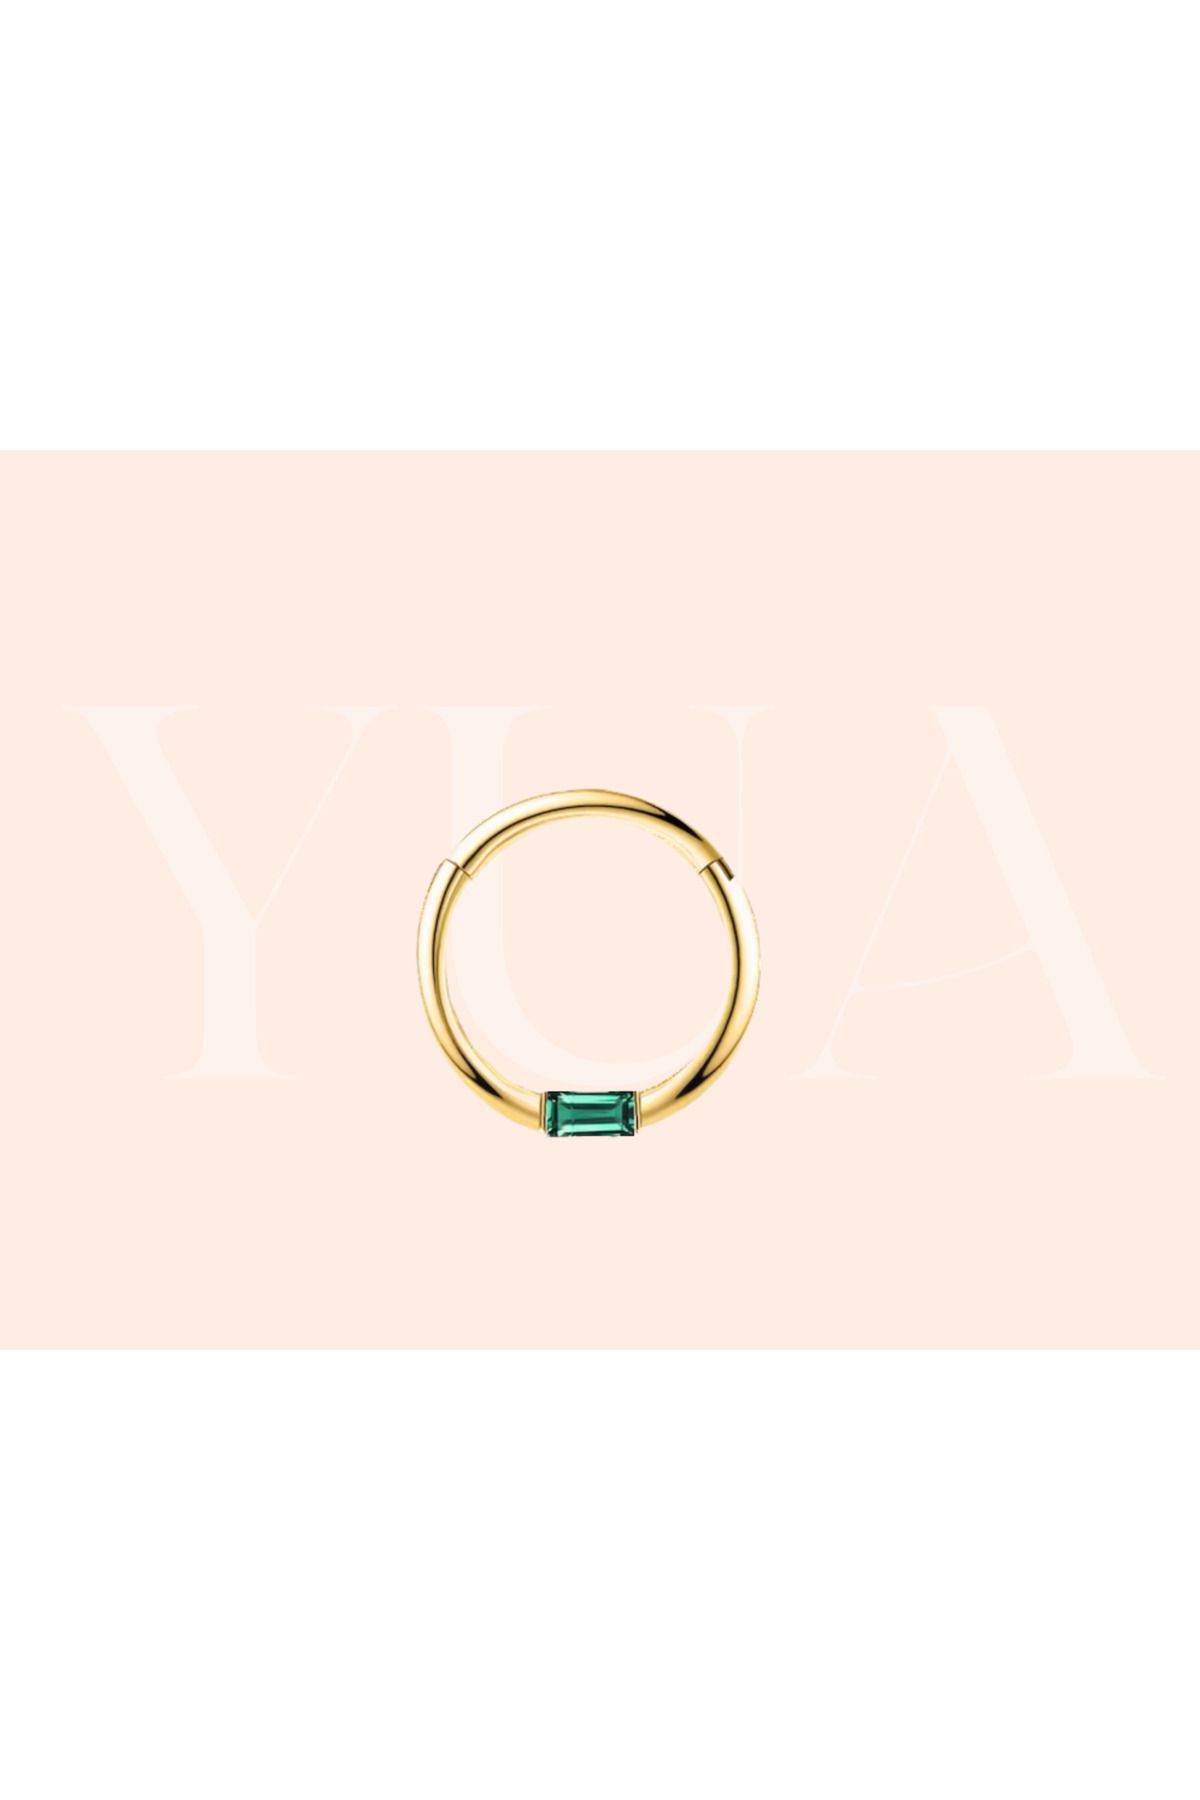 Yua Jewelry Zümrüt/Emerald Taşlı Baget Kesim 14 Ayar Altın Kıkırdak/Helix Halka Piercing